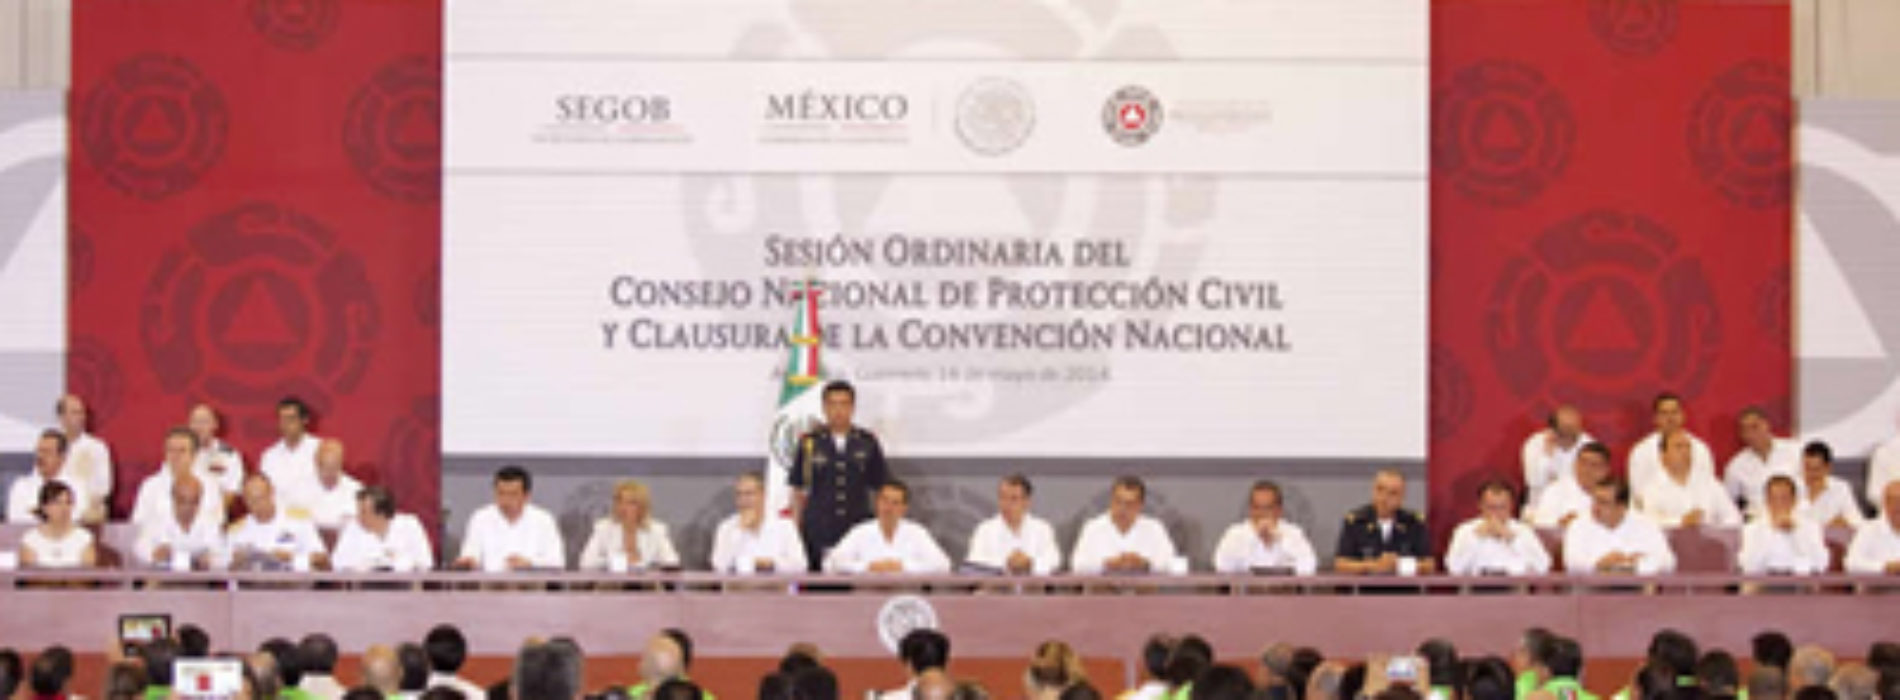 Designan a titular de Protección Civil de Oaxaca como nuevo coordinador regional de la zona sur-sureste del país